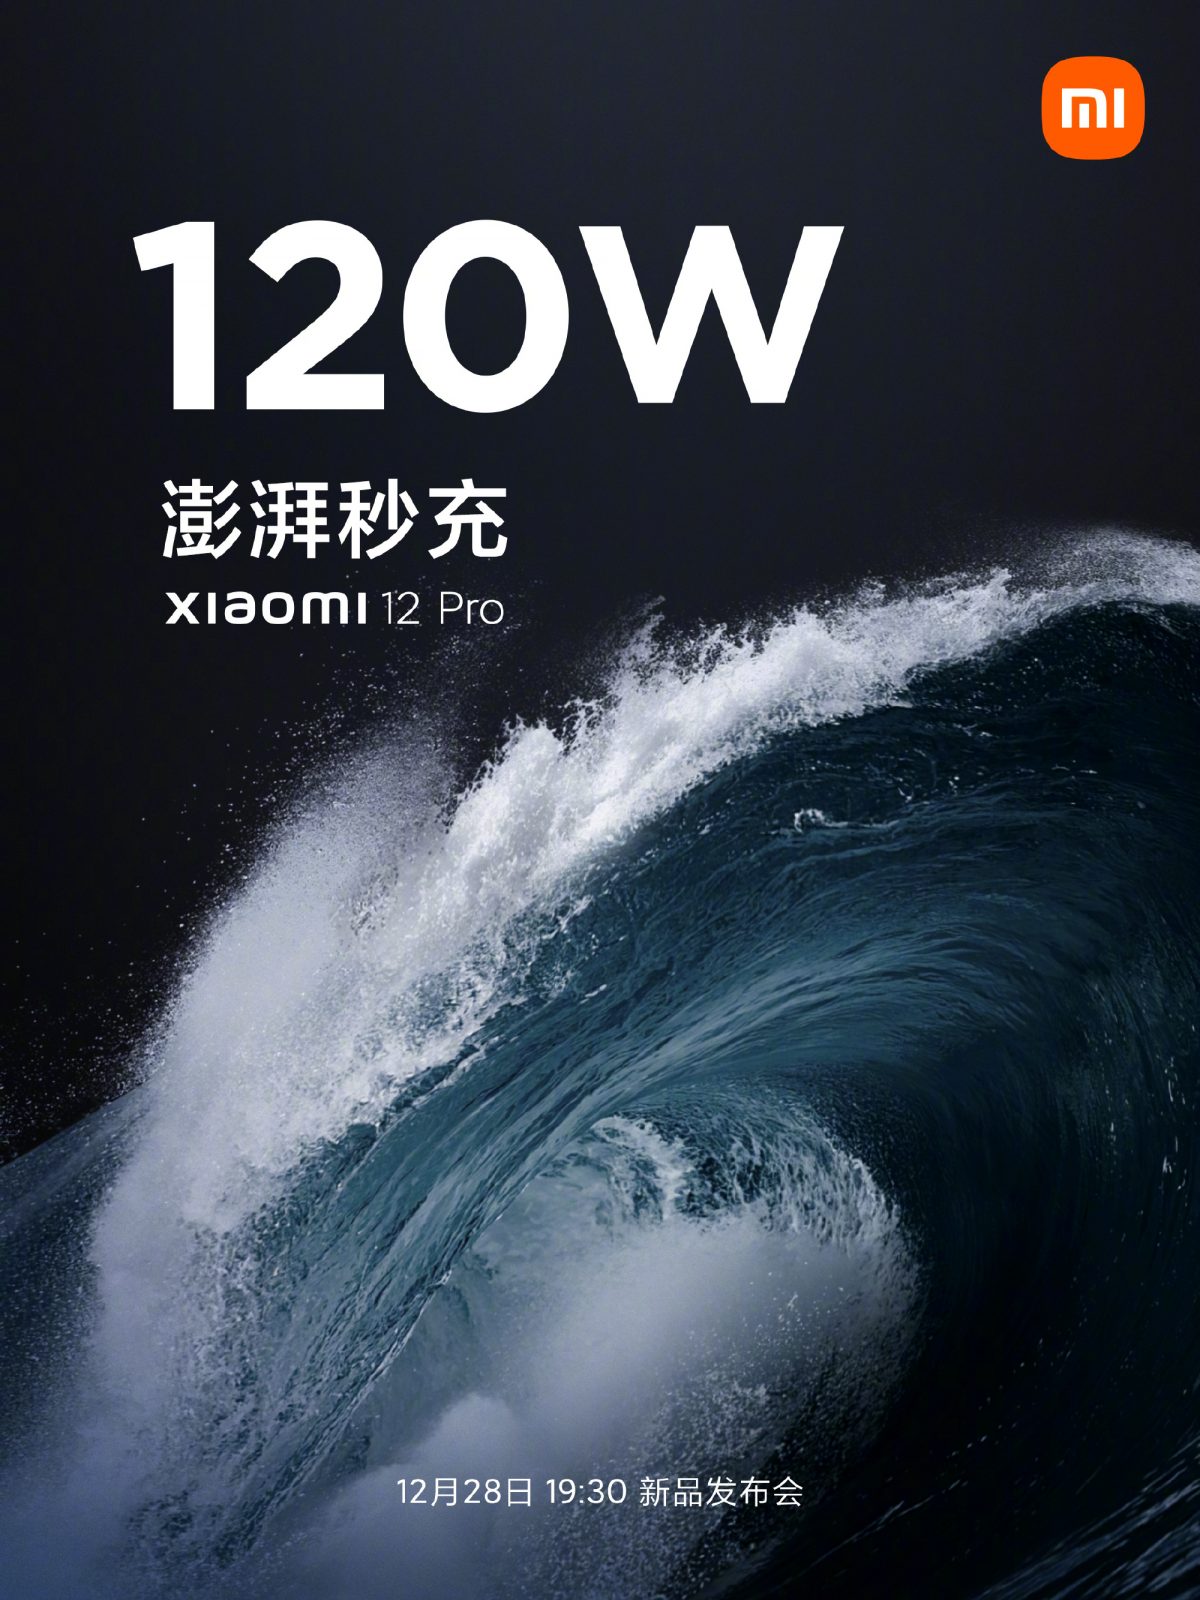 premiera Xiaomi 12 Pro cena specyfikacja techniczna plotki przecieki